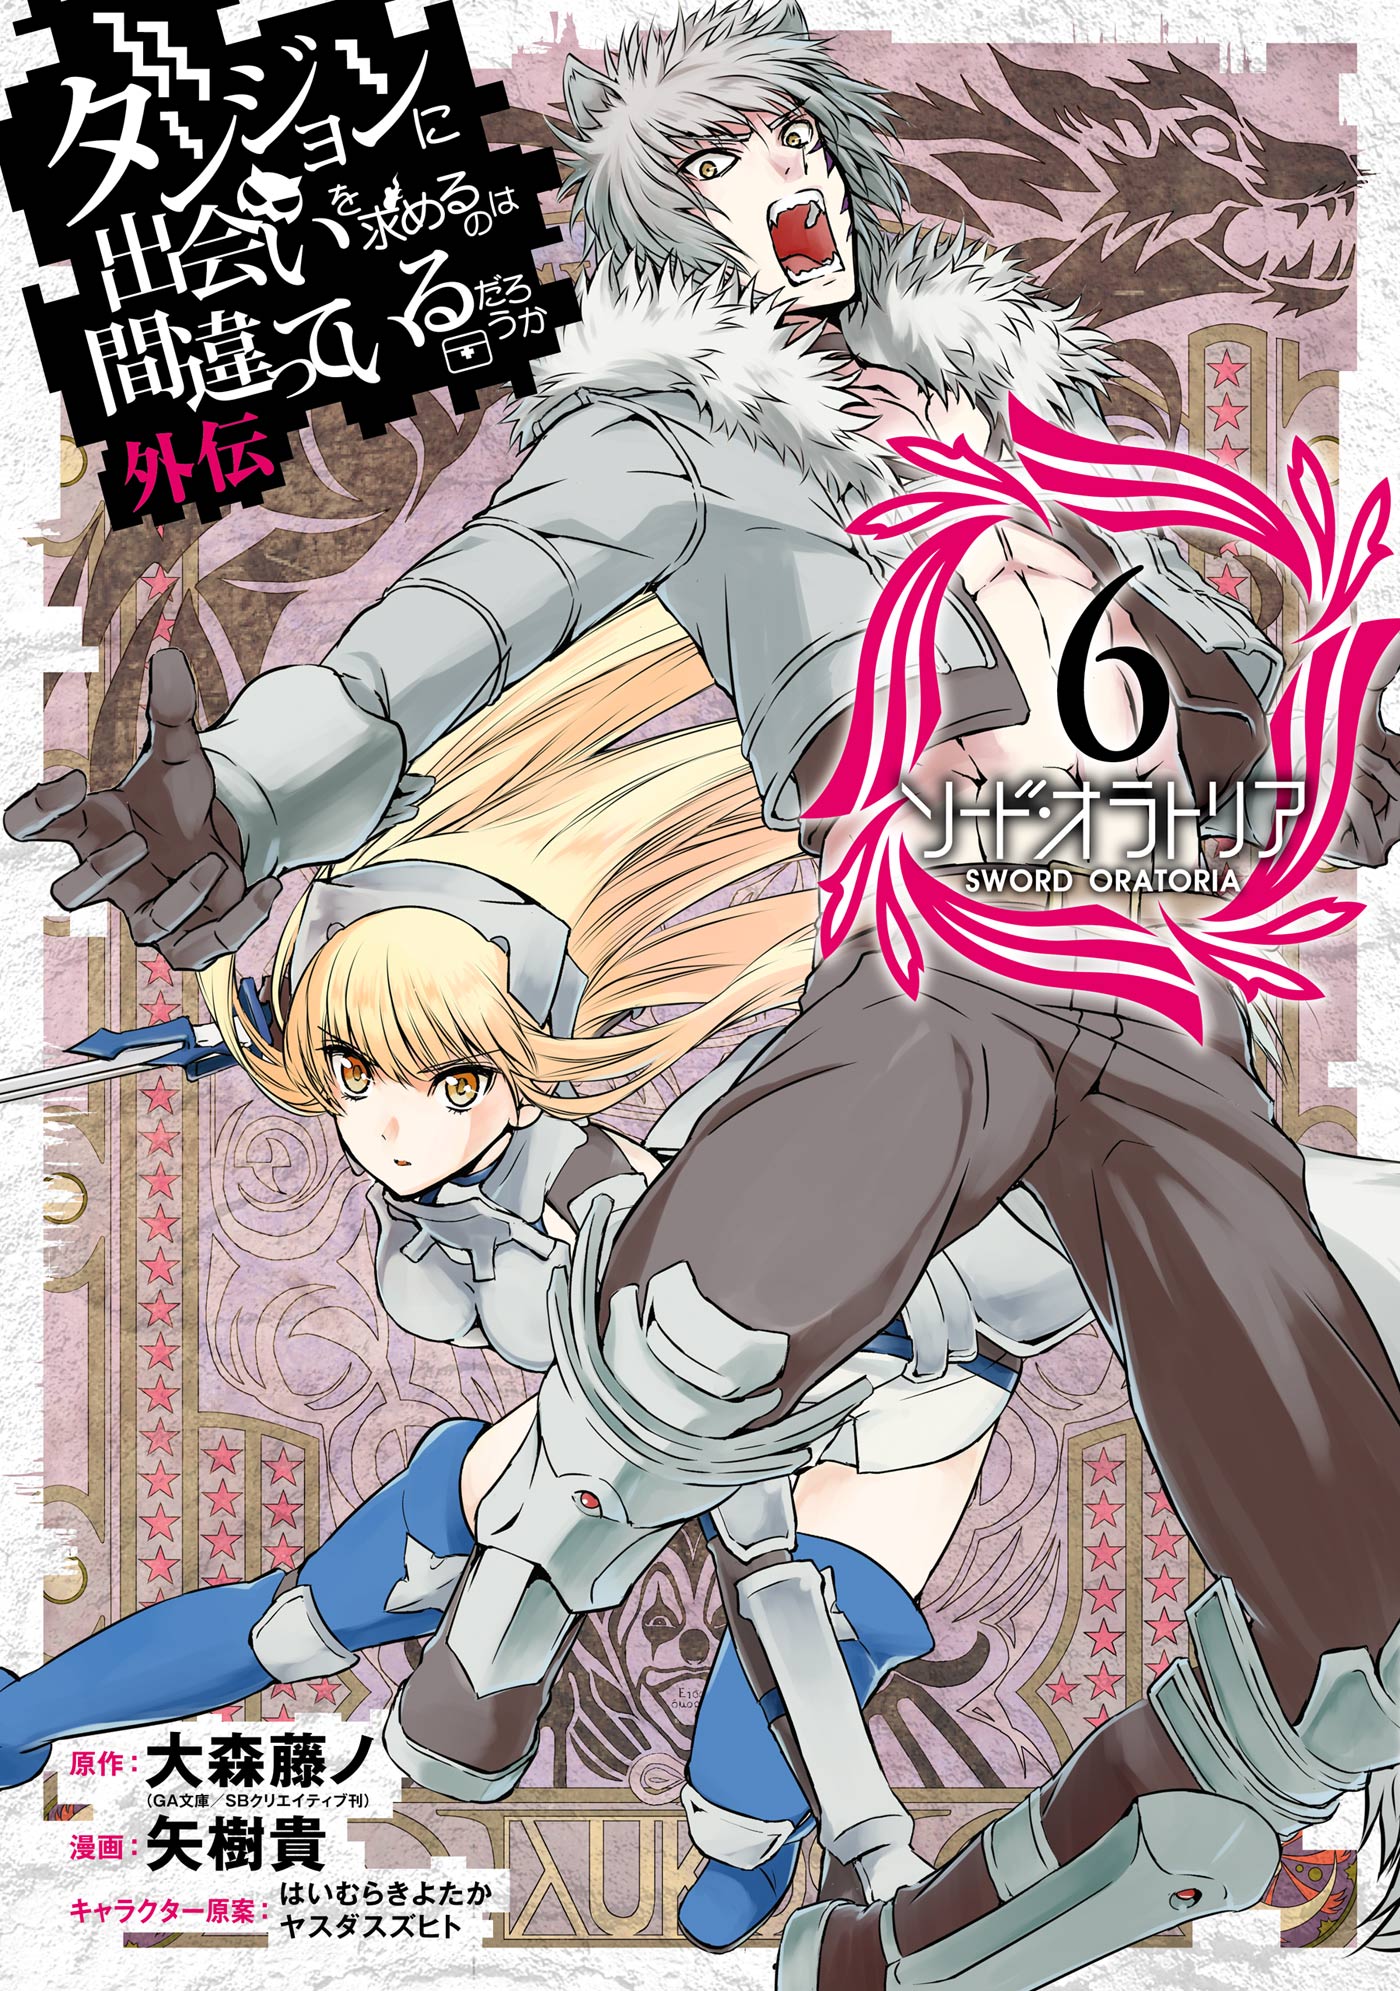 sword-oratoria-manga-volume-6-danmachi-wiki-fandom-powered-by-wikia